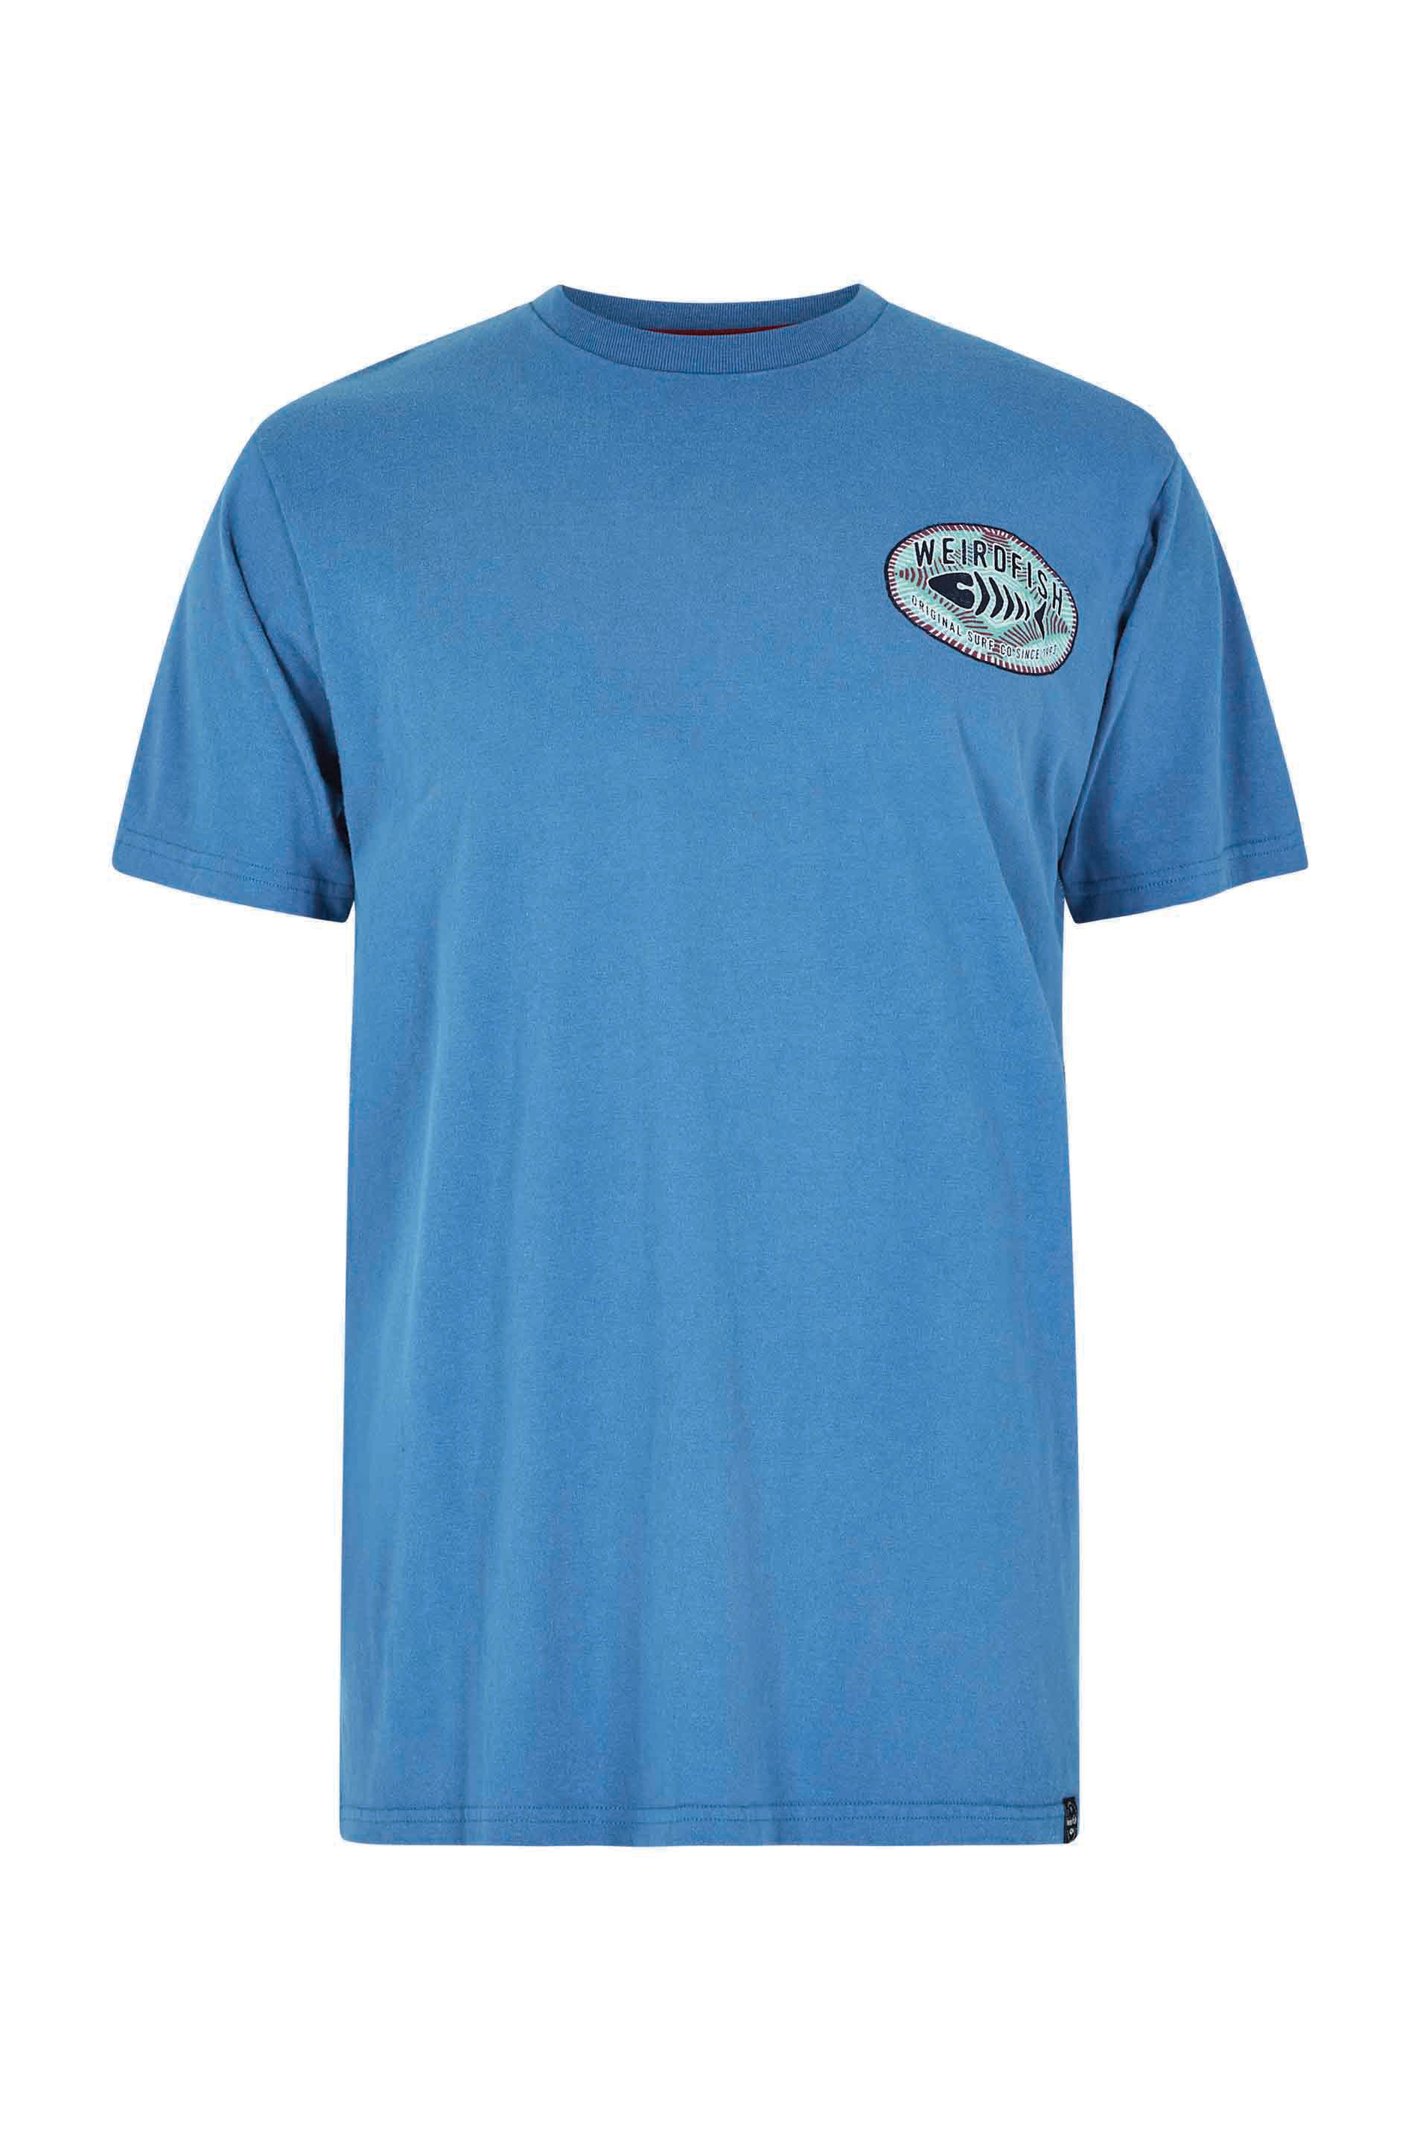 Weird Fish Original Surf Graphic T-Shirt Blue Sapphire Size 2XL